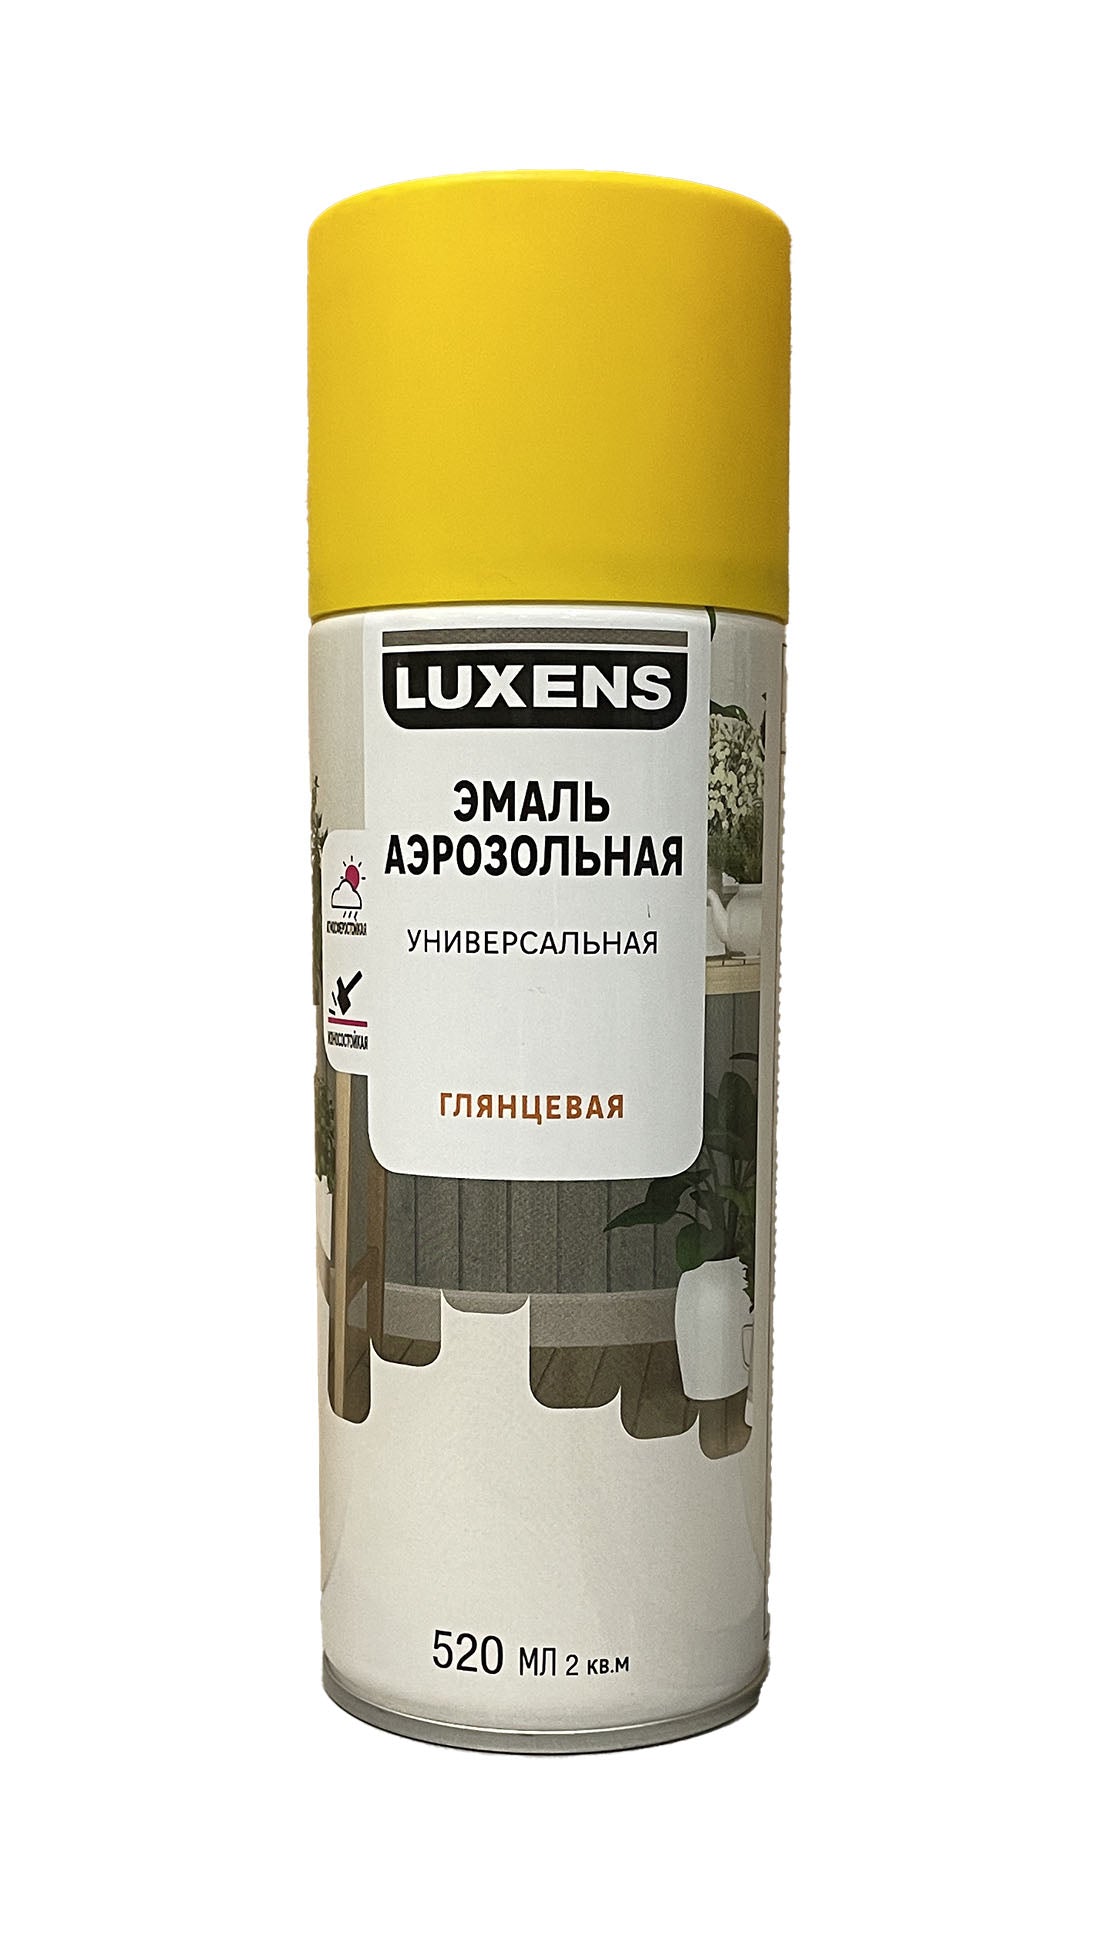 LUX-83237447-G-520 - аэрозольная универсальная эмаль Luxens, цвет: желтый, глянцевый (RAL 1021), баллон: 520 мл.